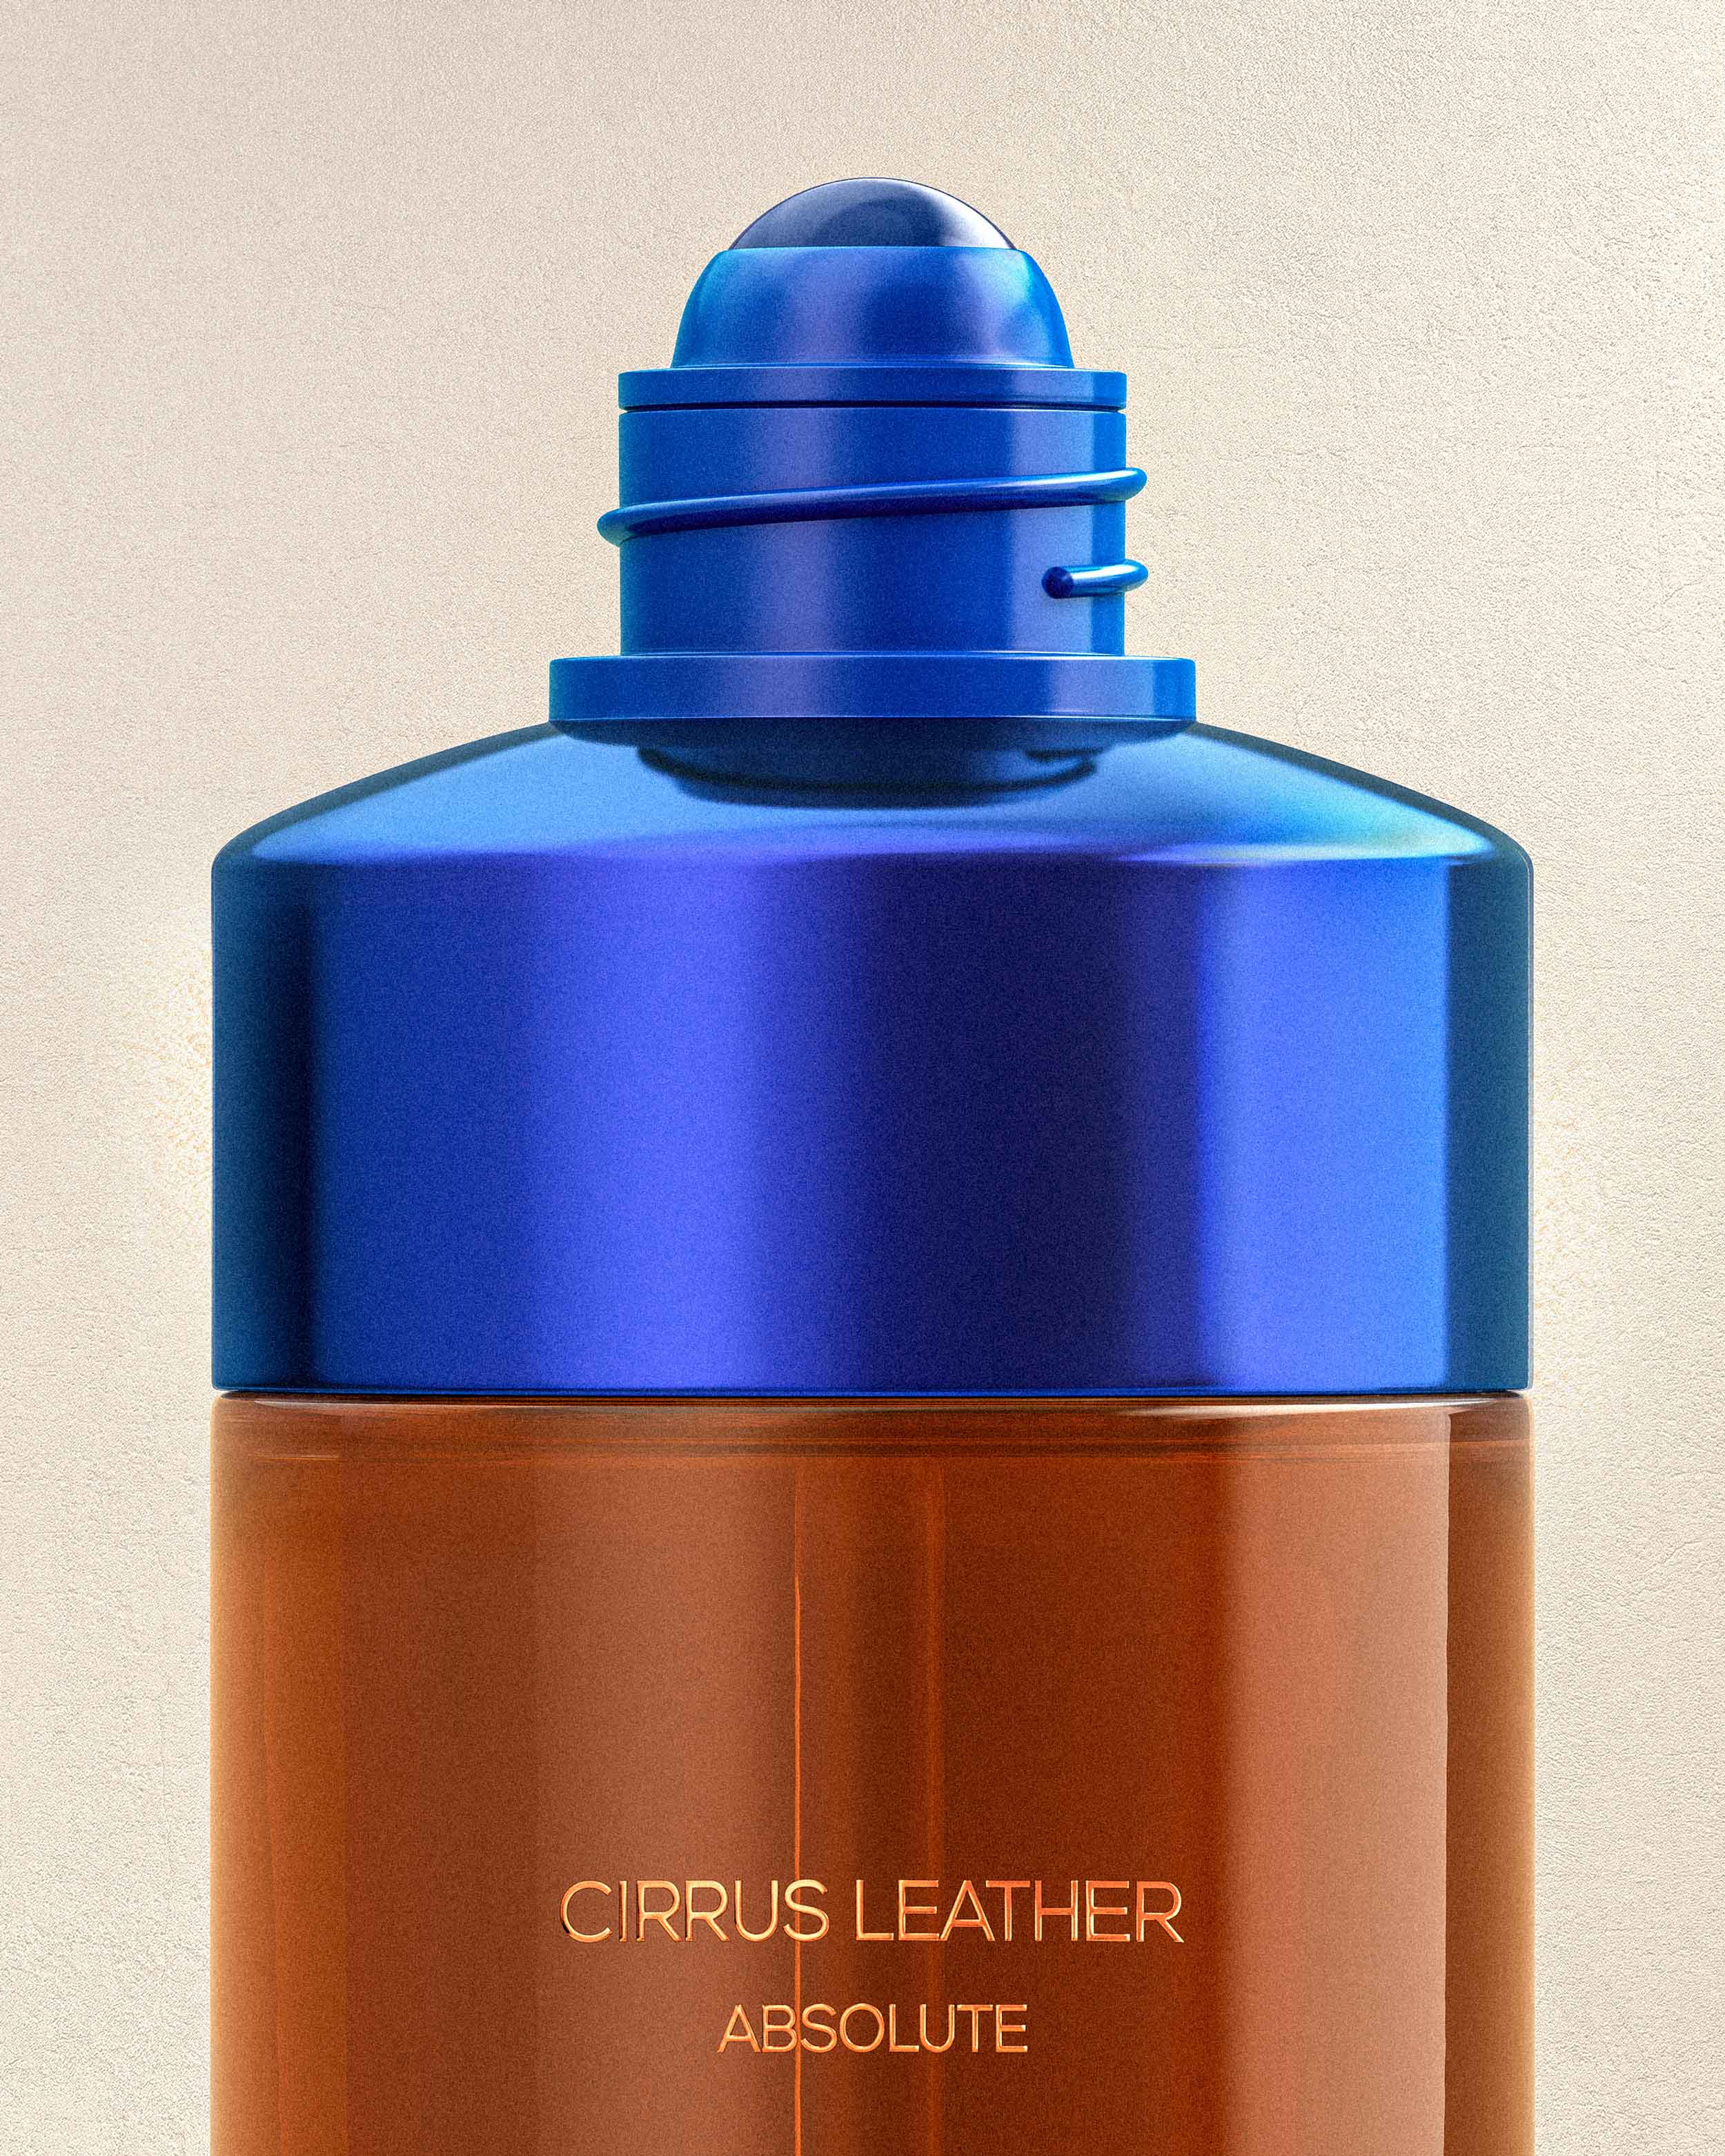 OJAR Absolute Cirrus Leather Perfume Roll-on